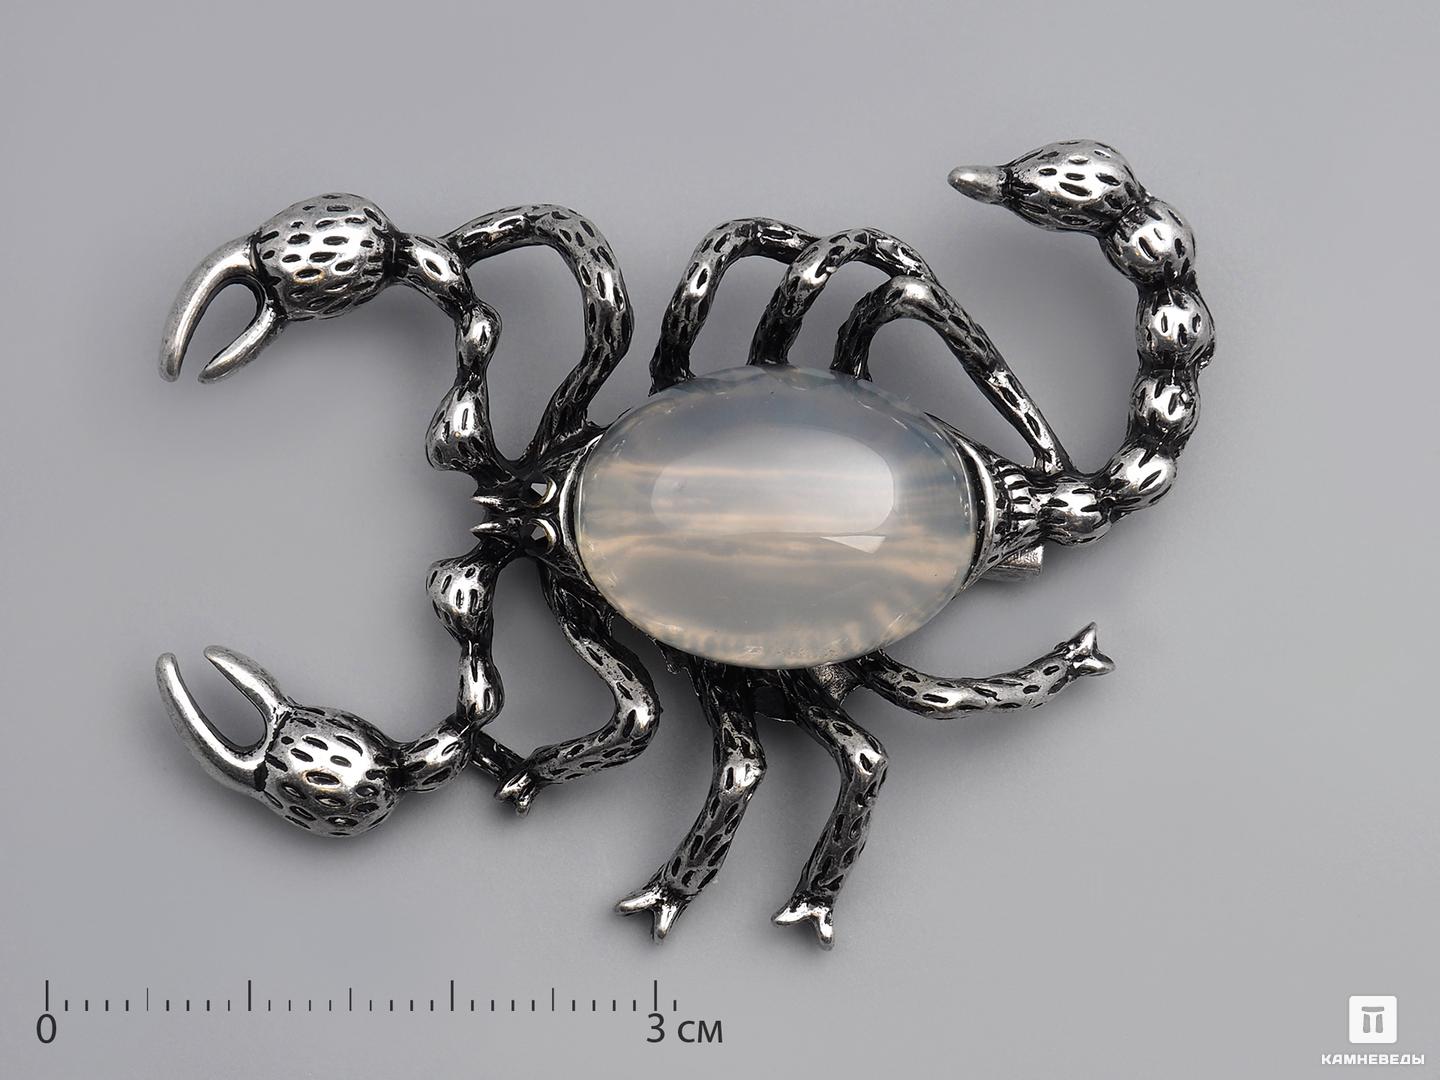 Брошь-кулон «Скорпион» с халцедоном брошь из серебра с эмалью element47 sy 369240 br br enam 001 wg